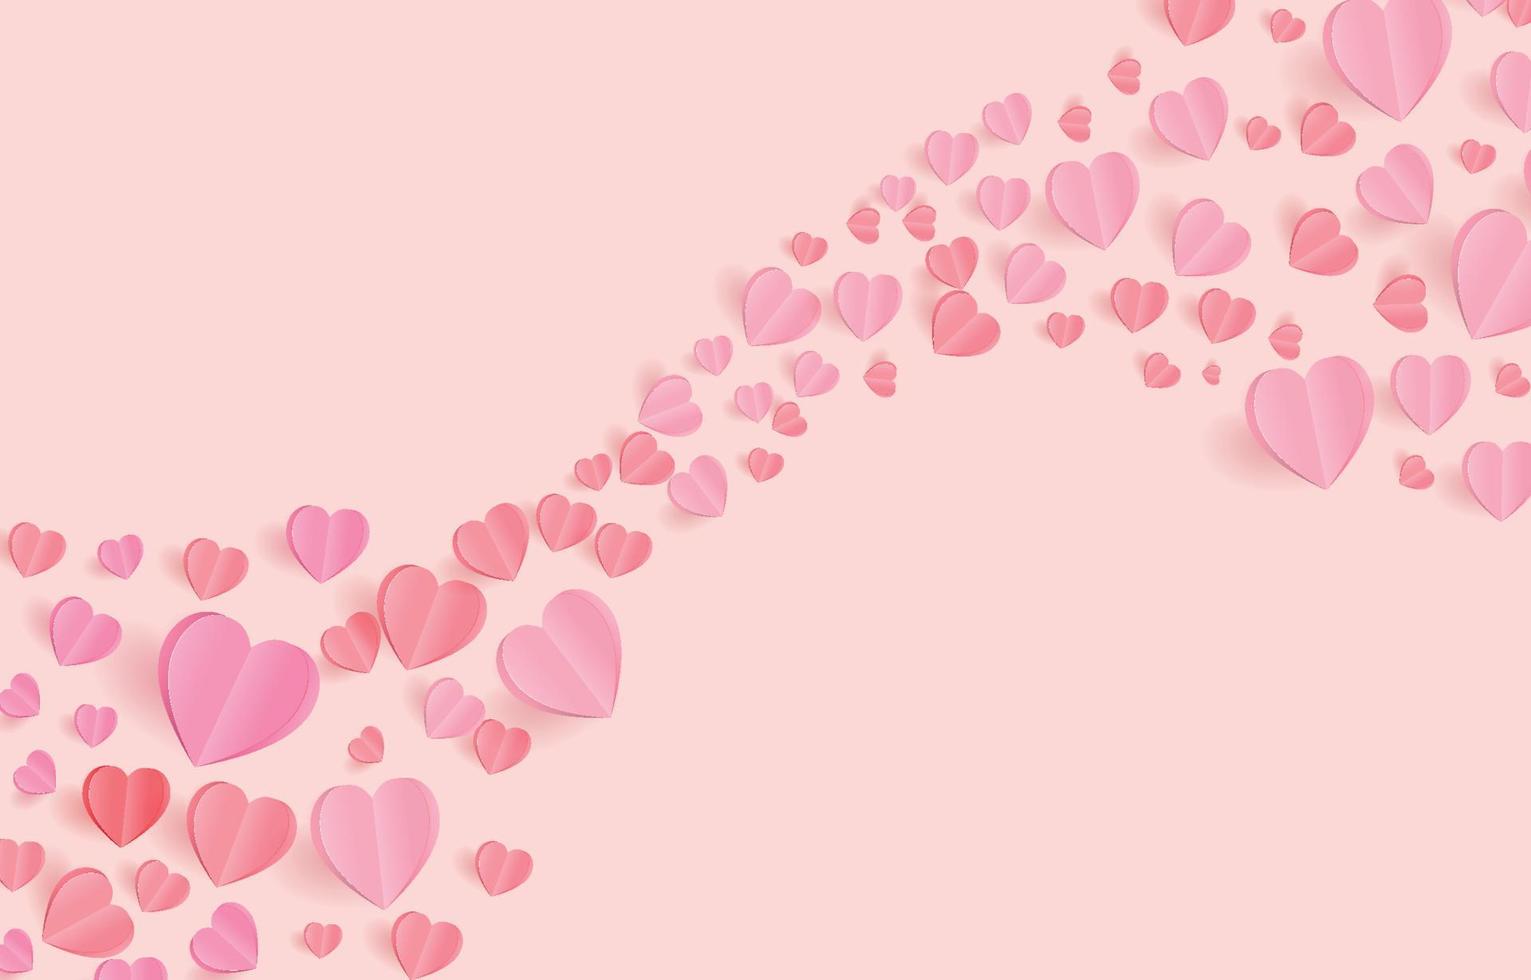 papier gesneden elementen in de vorm van een hart vliegen op oranje en zoete achtergrond. vectorsymbolen van liefde voor gelukkige Valentijnsdag, verjaardagswenskaartontwerp. vector